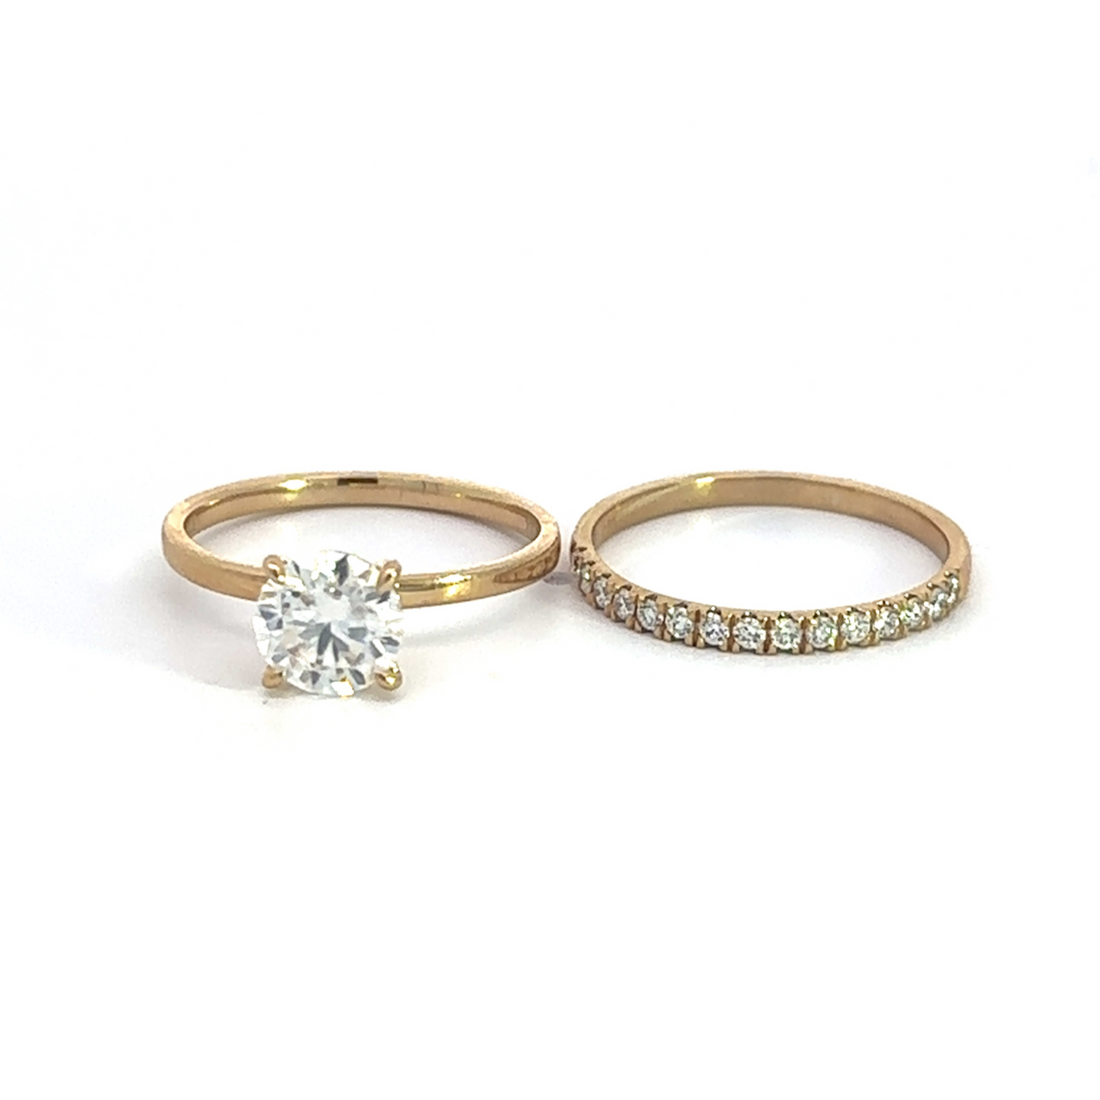 Baikalla Sterling Silver Moissanite Ring 4 Baikalla 14k Yellow Gold Moissanite Diamond 2 in 1 Engagement Ring Set